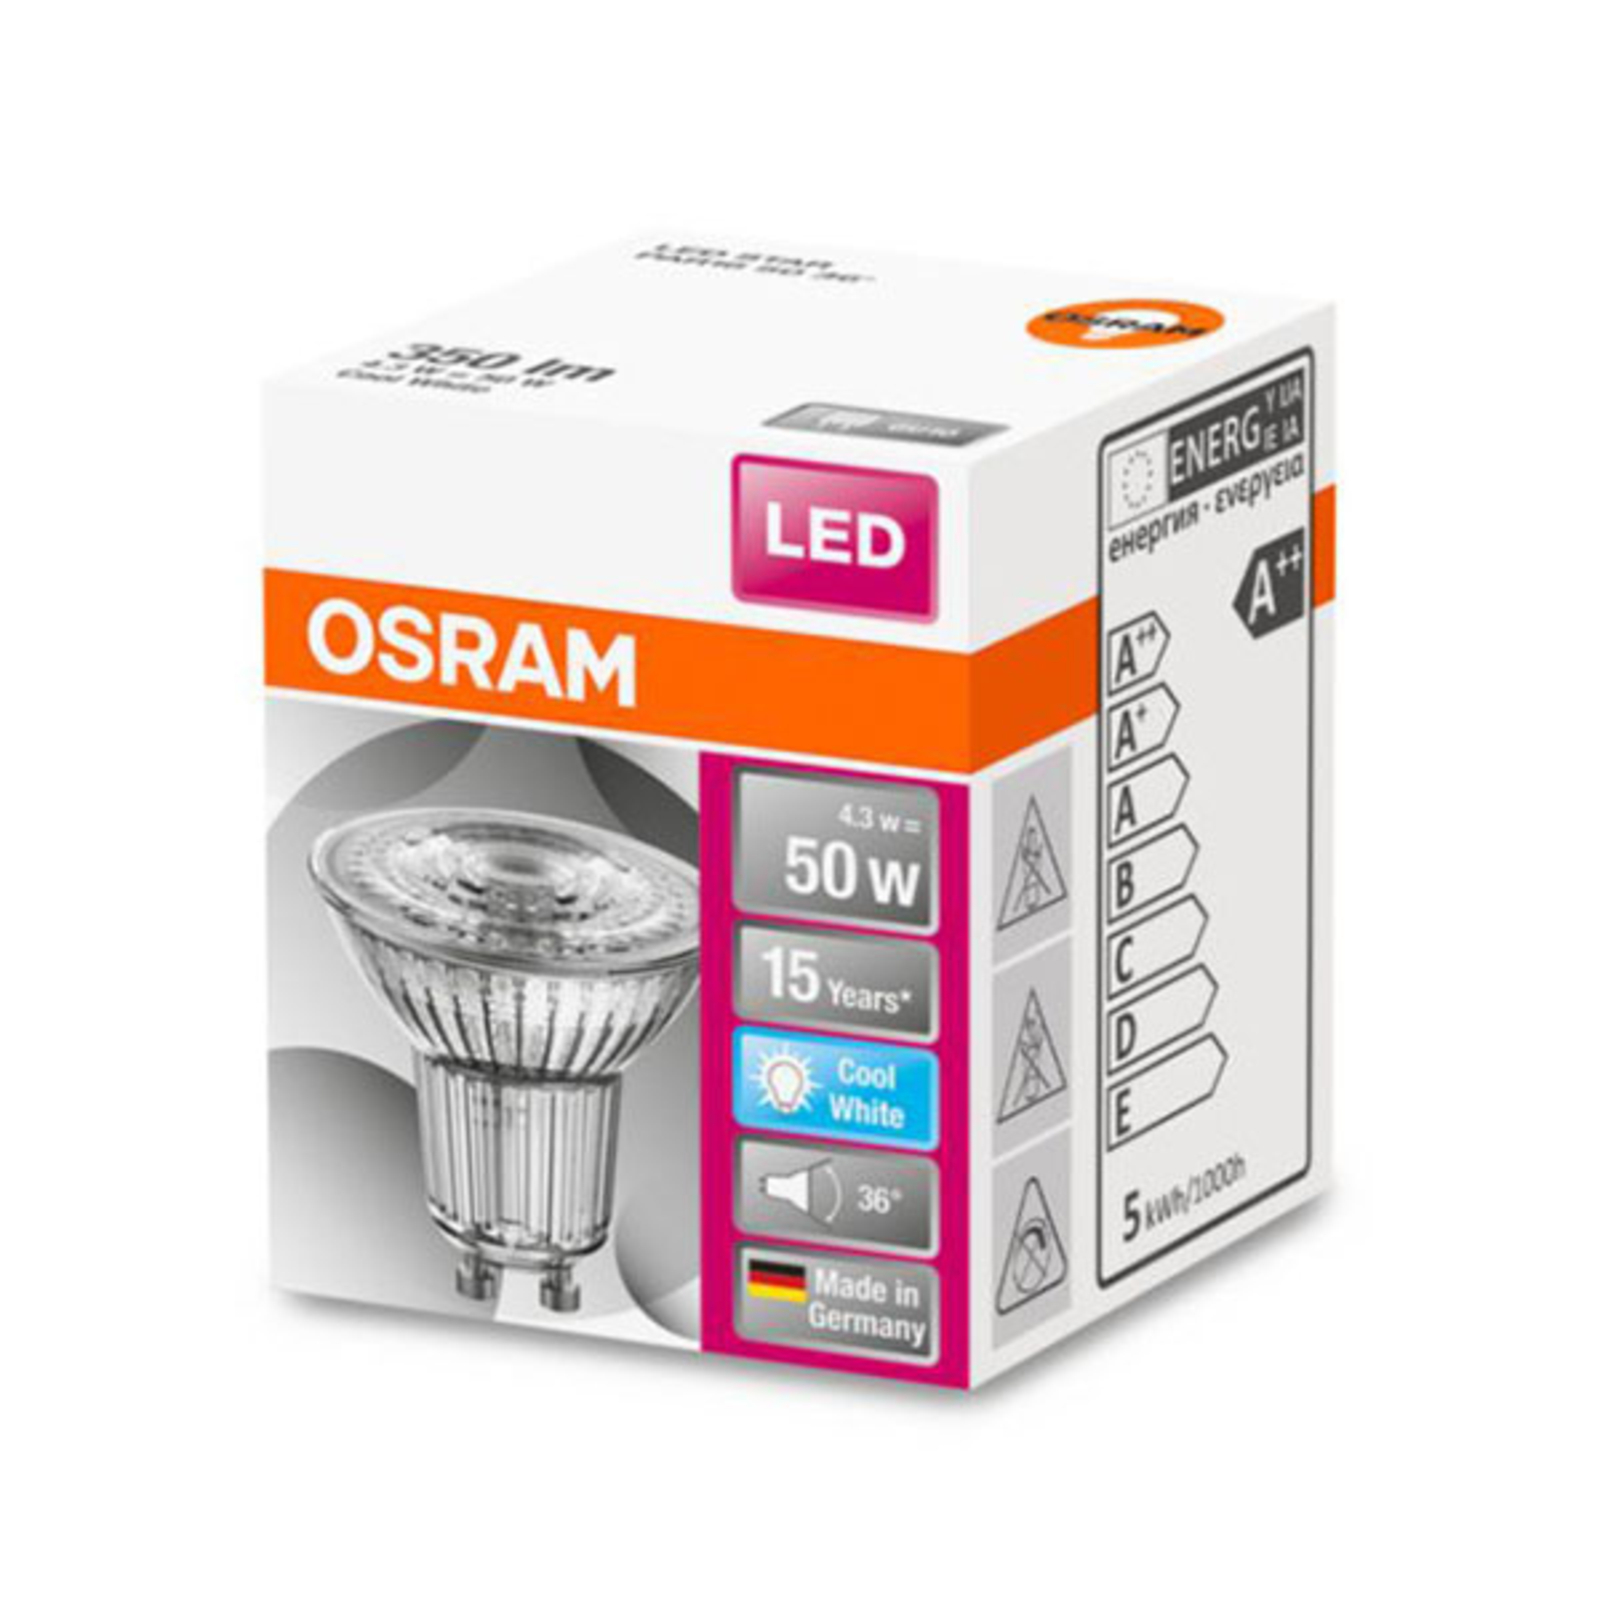 OSRAM LED refletor Star GU10 4.5W branco universal